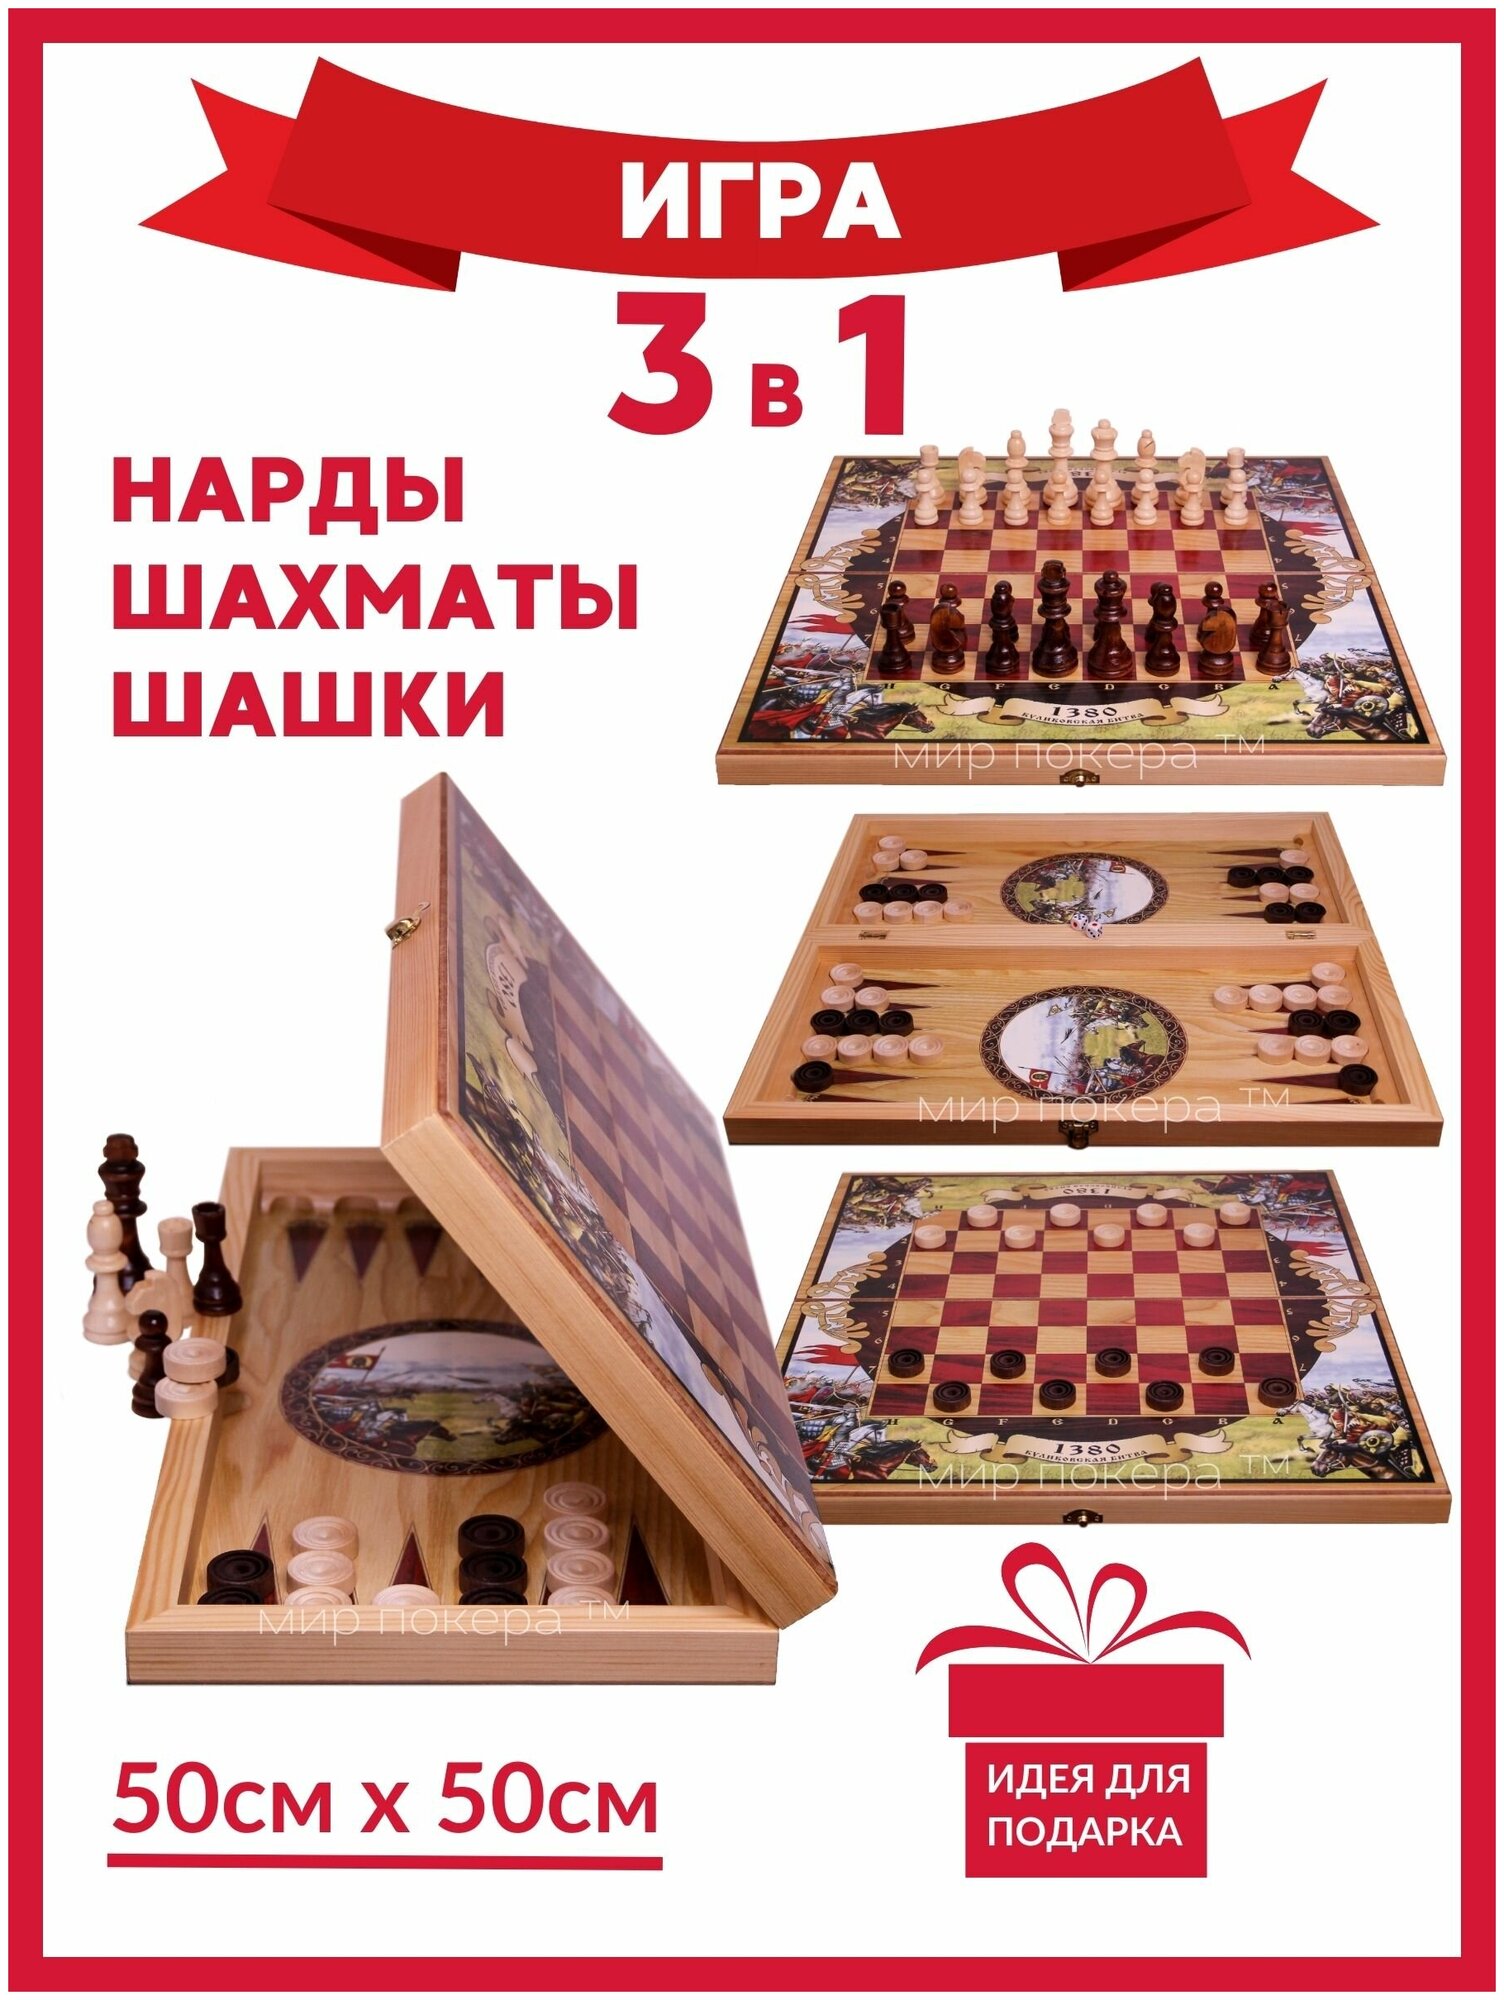 Шахматы 3 в 1 обиходные( Шахматы, Нарды, Шашки) игра 50 см Куликовская Битва